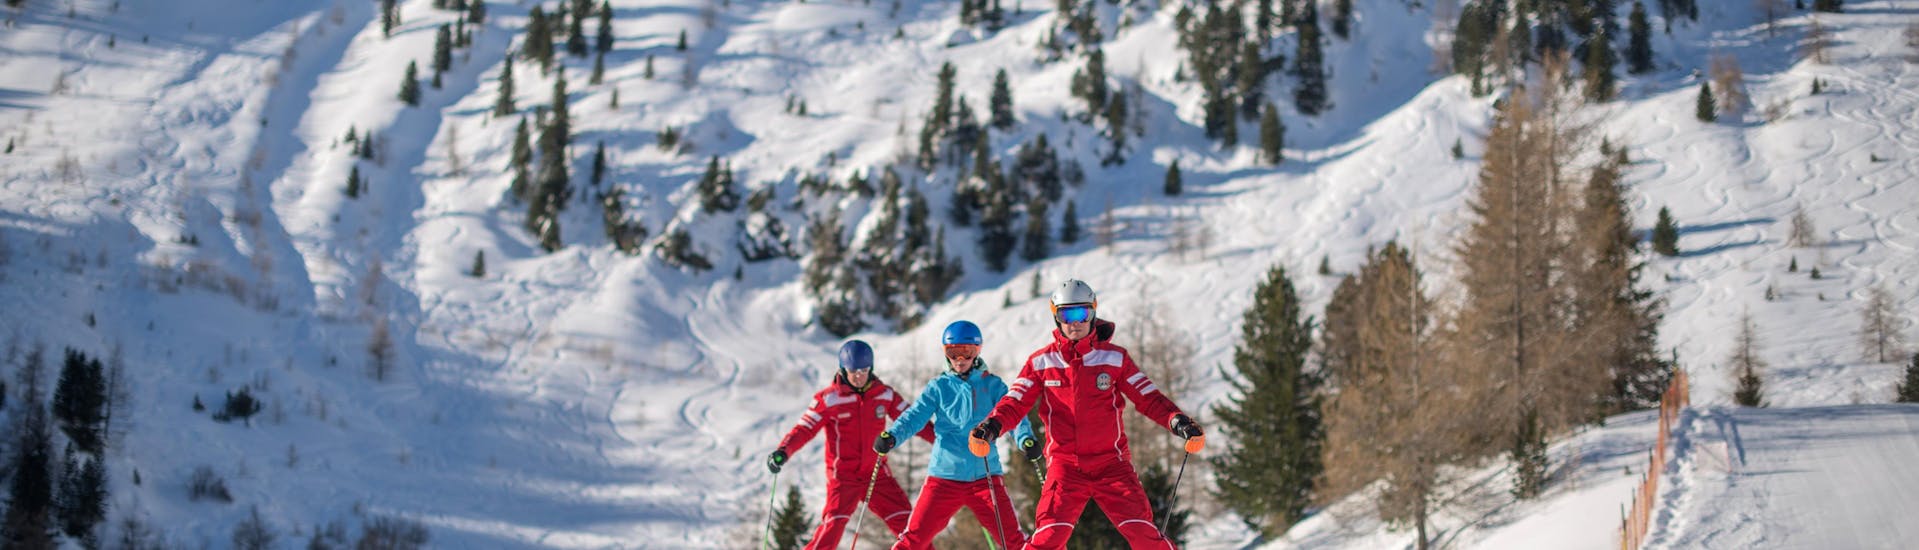 Maestro di sci con bambini a Speikboden - Campo Tures (Sand in Taufers) durante una delle Lezioni private di sci per bambini per tutti i livelli